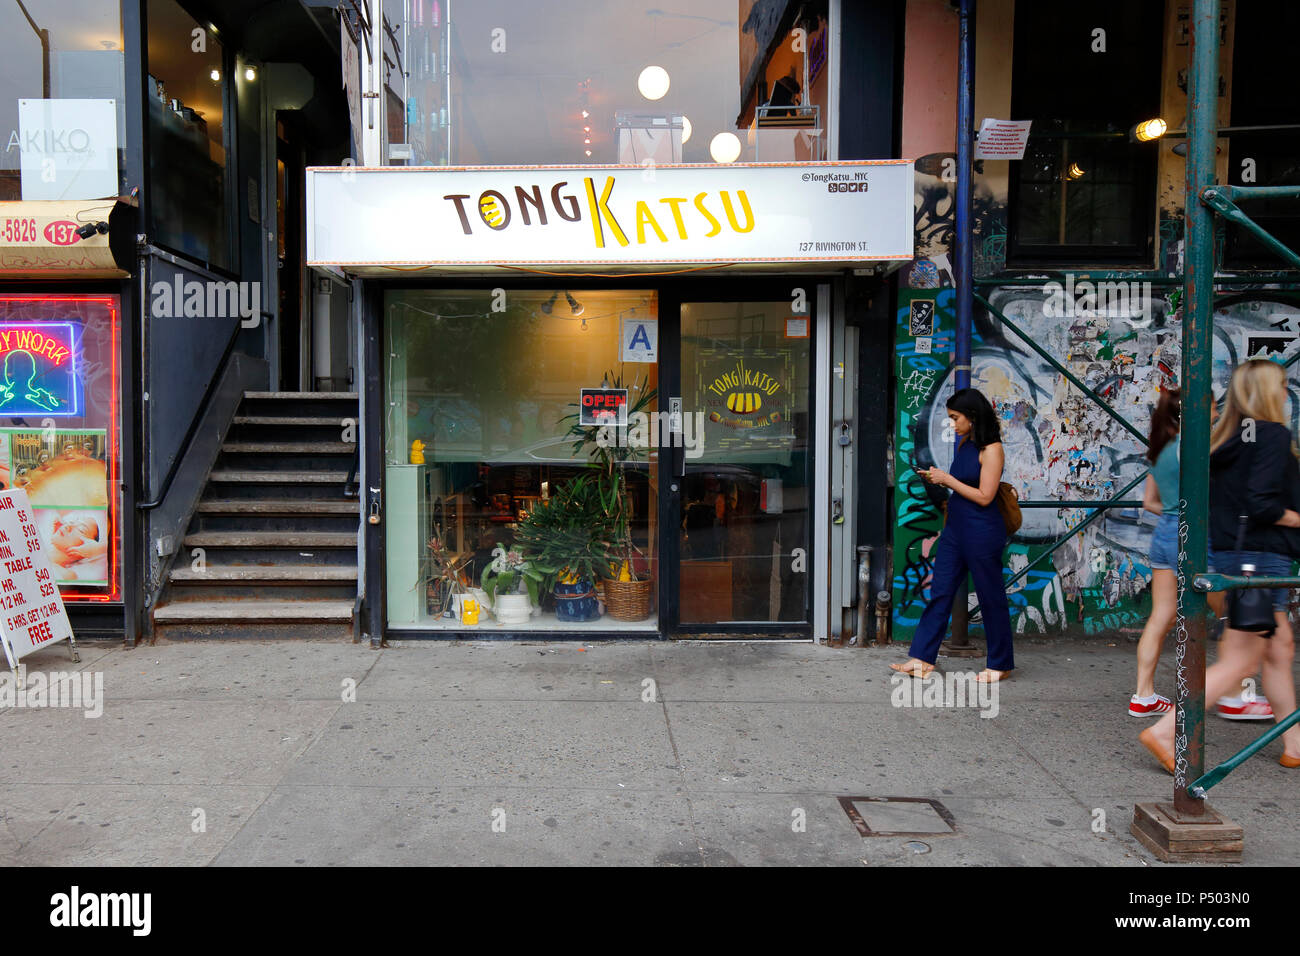 [Front de vente historique] TongKatsu, 137 Rivington St, New York, NY. Façade extérieure d'un restaurant japonais dans le Lower East Side de Manhattan Banque D'Images